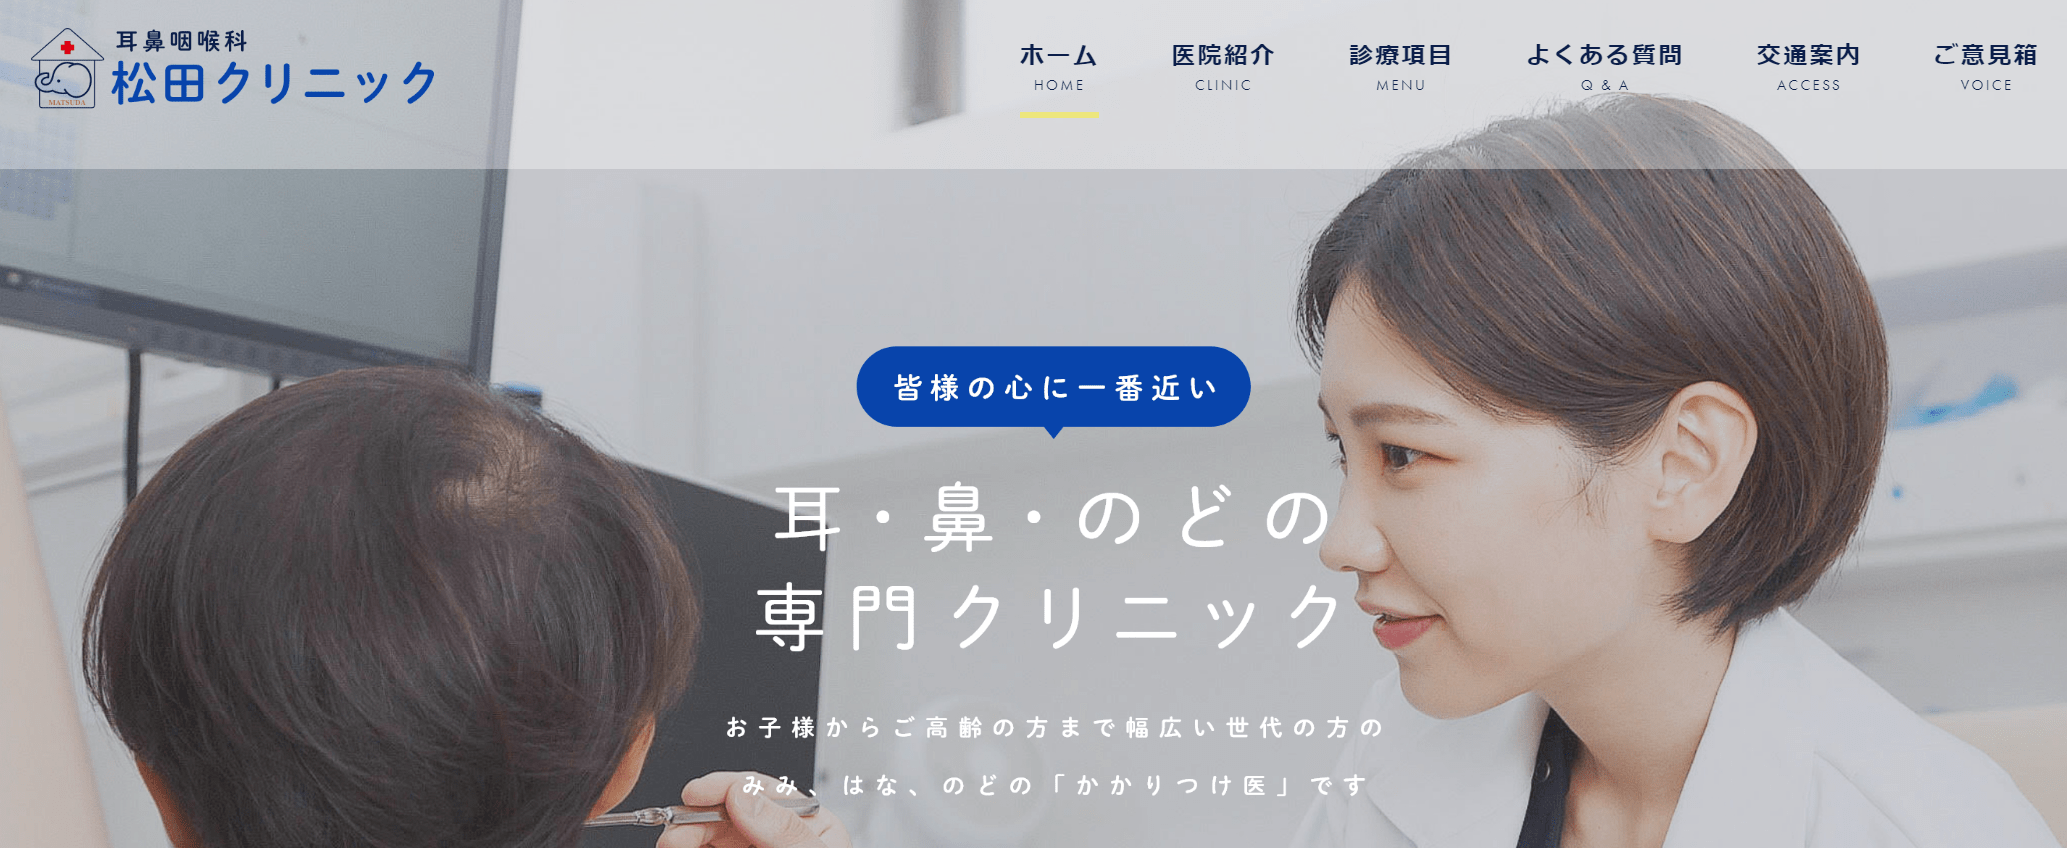 東京都で評判の耳鼻咽喉科クリニックおすすめ10選 松田クリニック